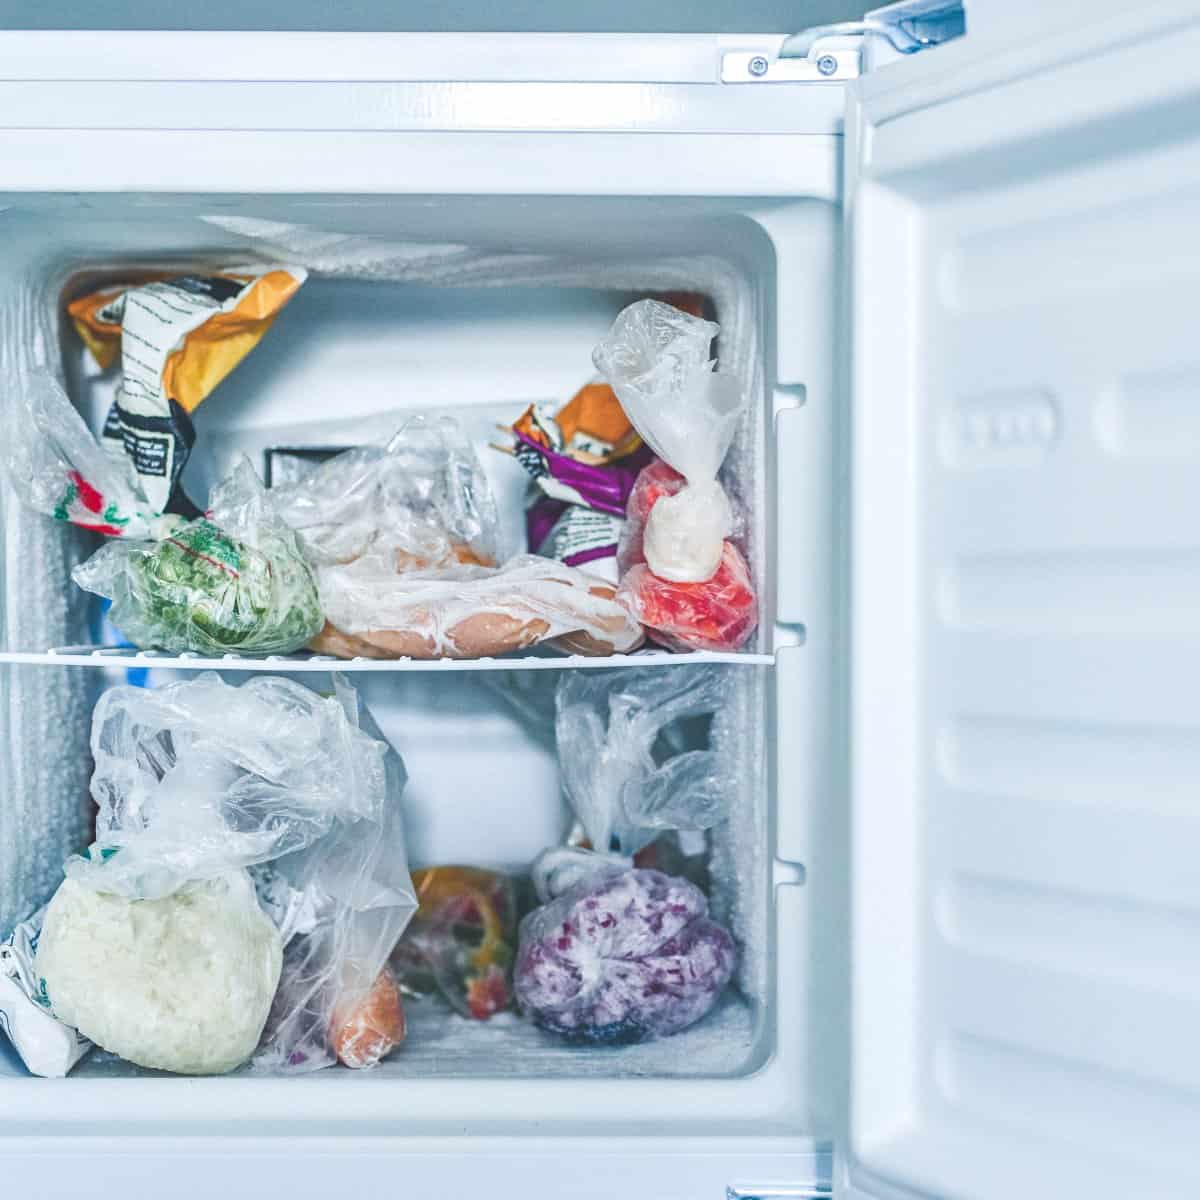 ¿Qué le hace la congelación a los alimentos?